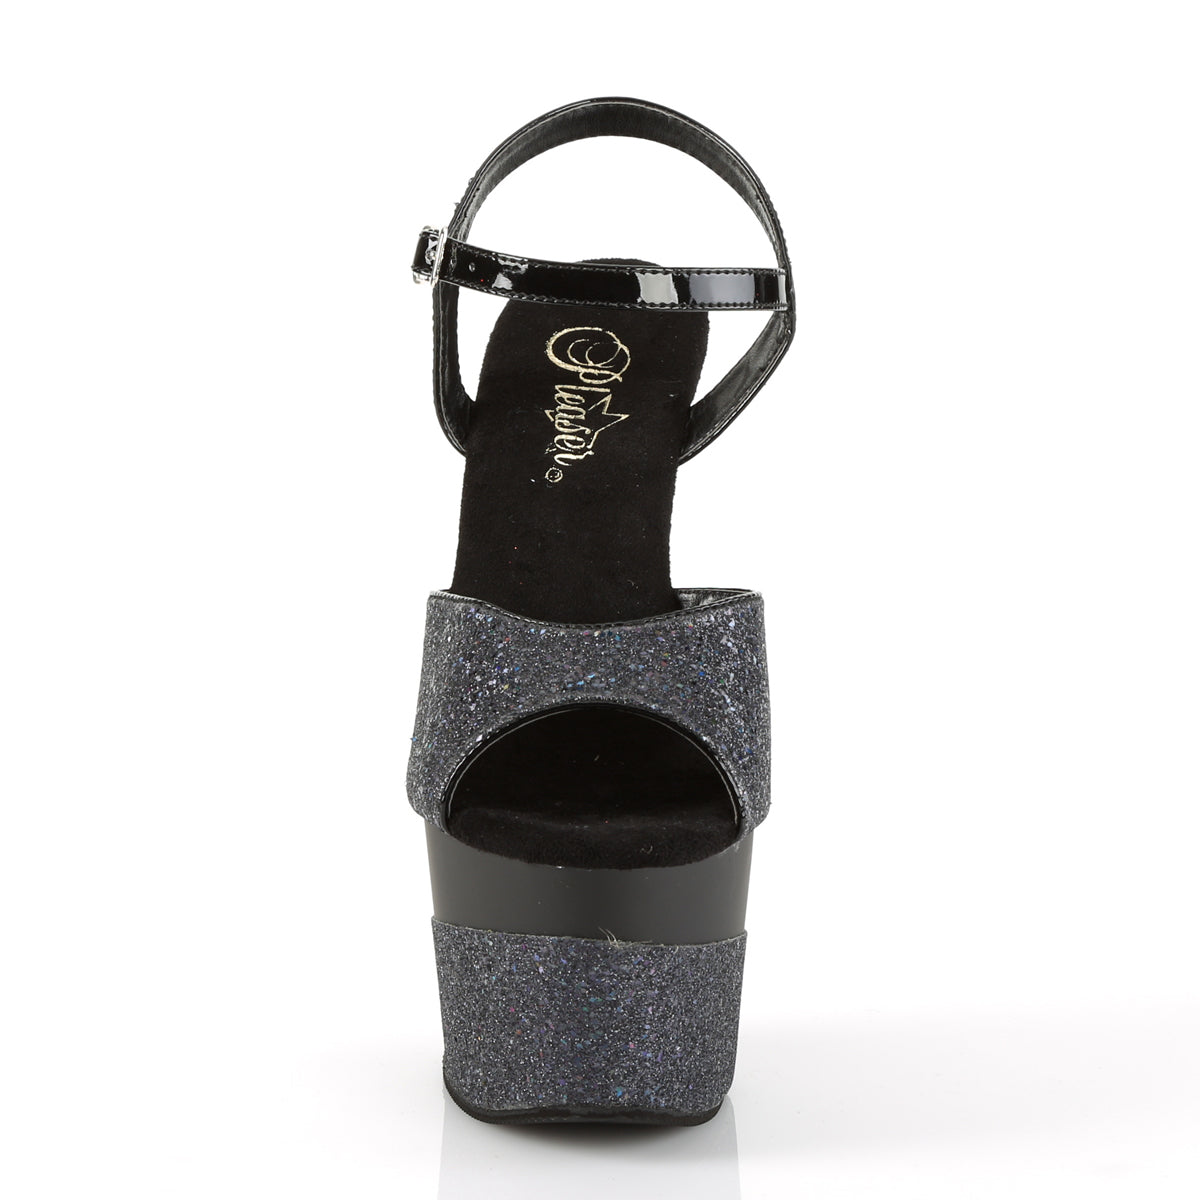 Pleaser Womens Sandals ADORE-709-2G Blk Multi Glitter/Blk Multi Glitter